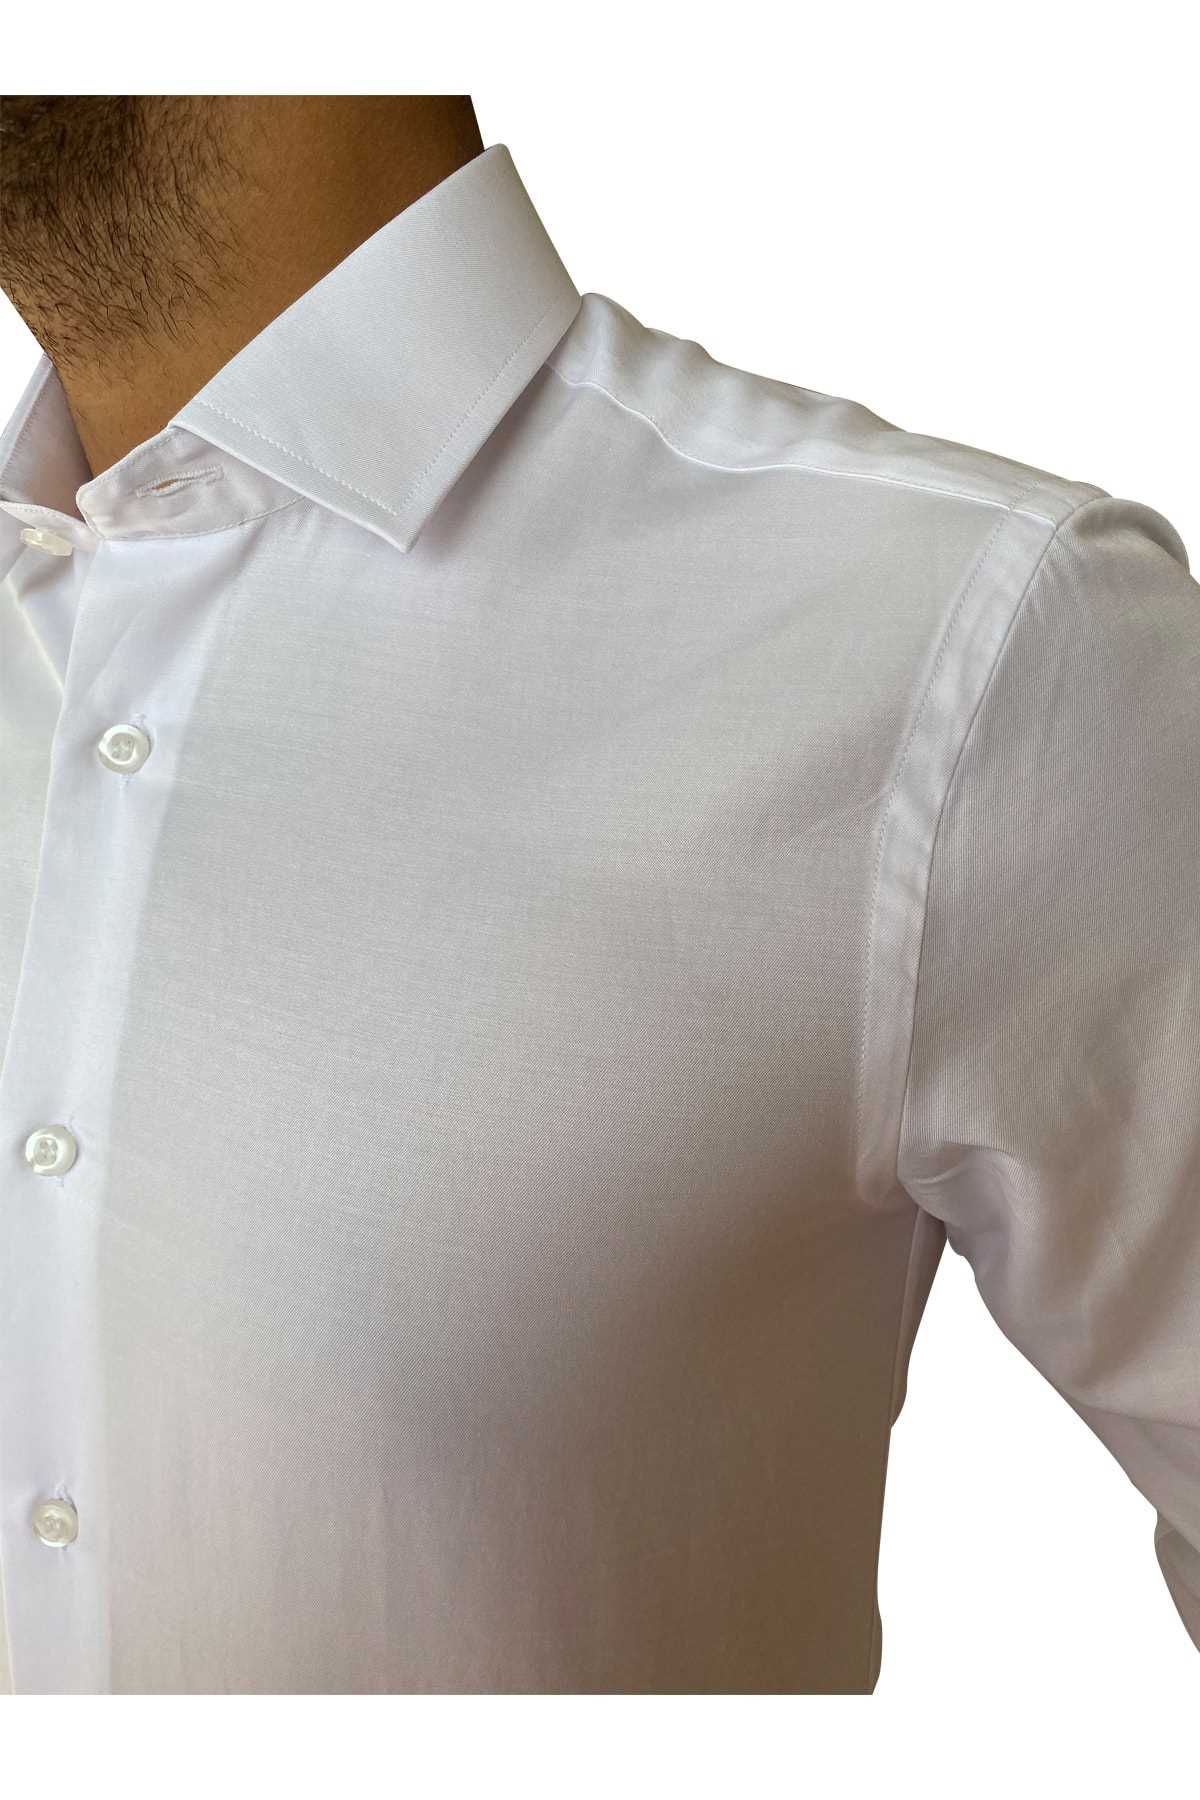 خرید پیراهن ساتن مردانه ترک برند BİCAN رنگ سفید ty81398465